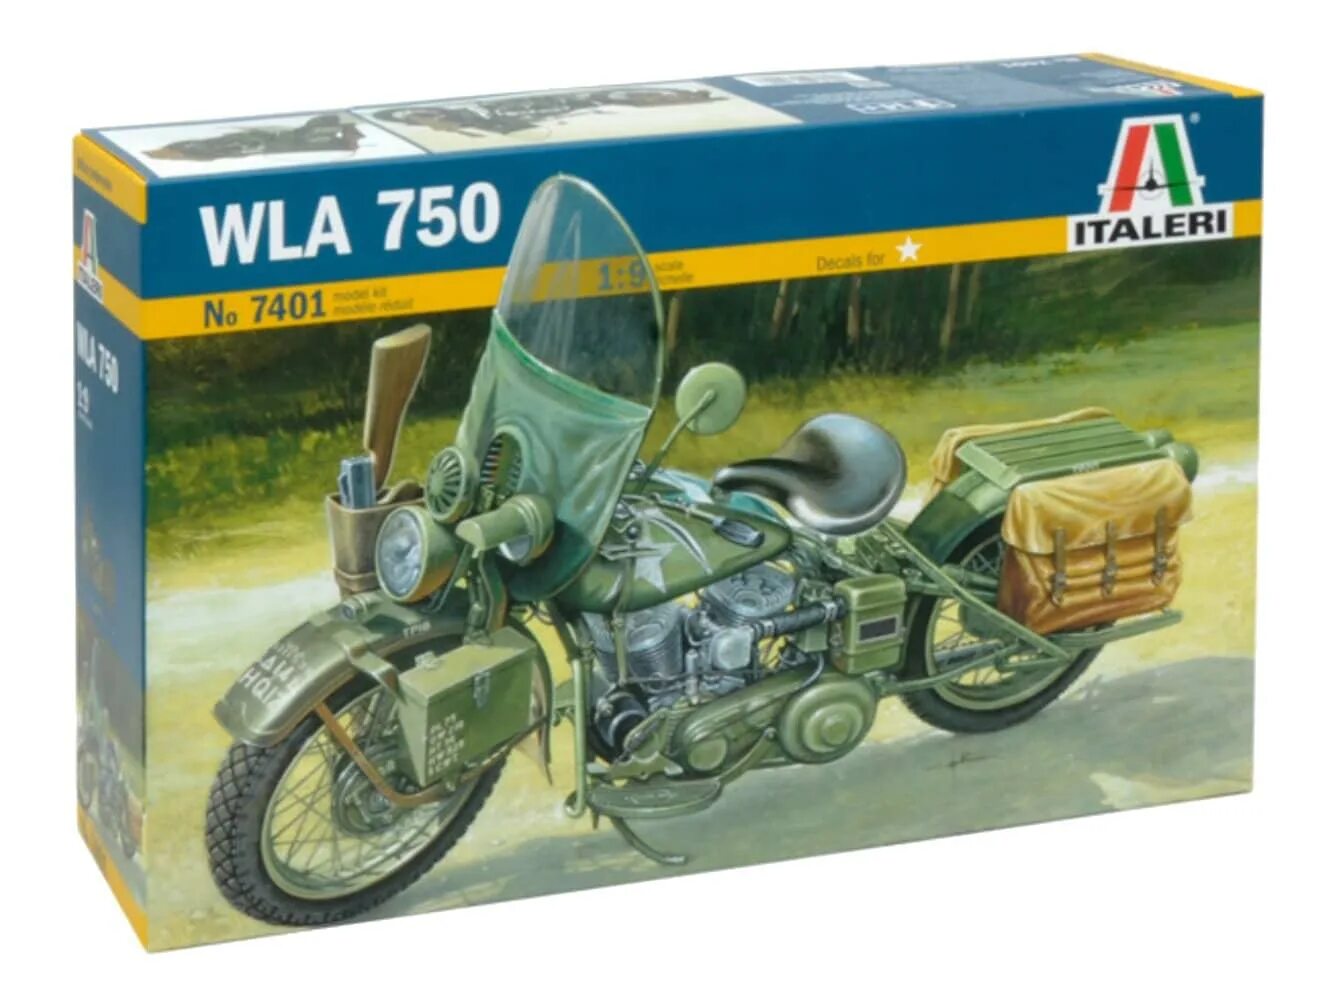 Italeri мотоцикл wla 750 1:9. Italeri 1/9 мотоцикл. 7403ит немецкий военный мотоцикл с люлькой Italeri 1/9. Сборная модель мотоцикла. Сборные модели мотоциклов